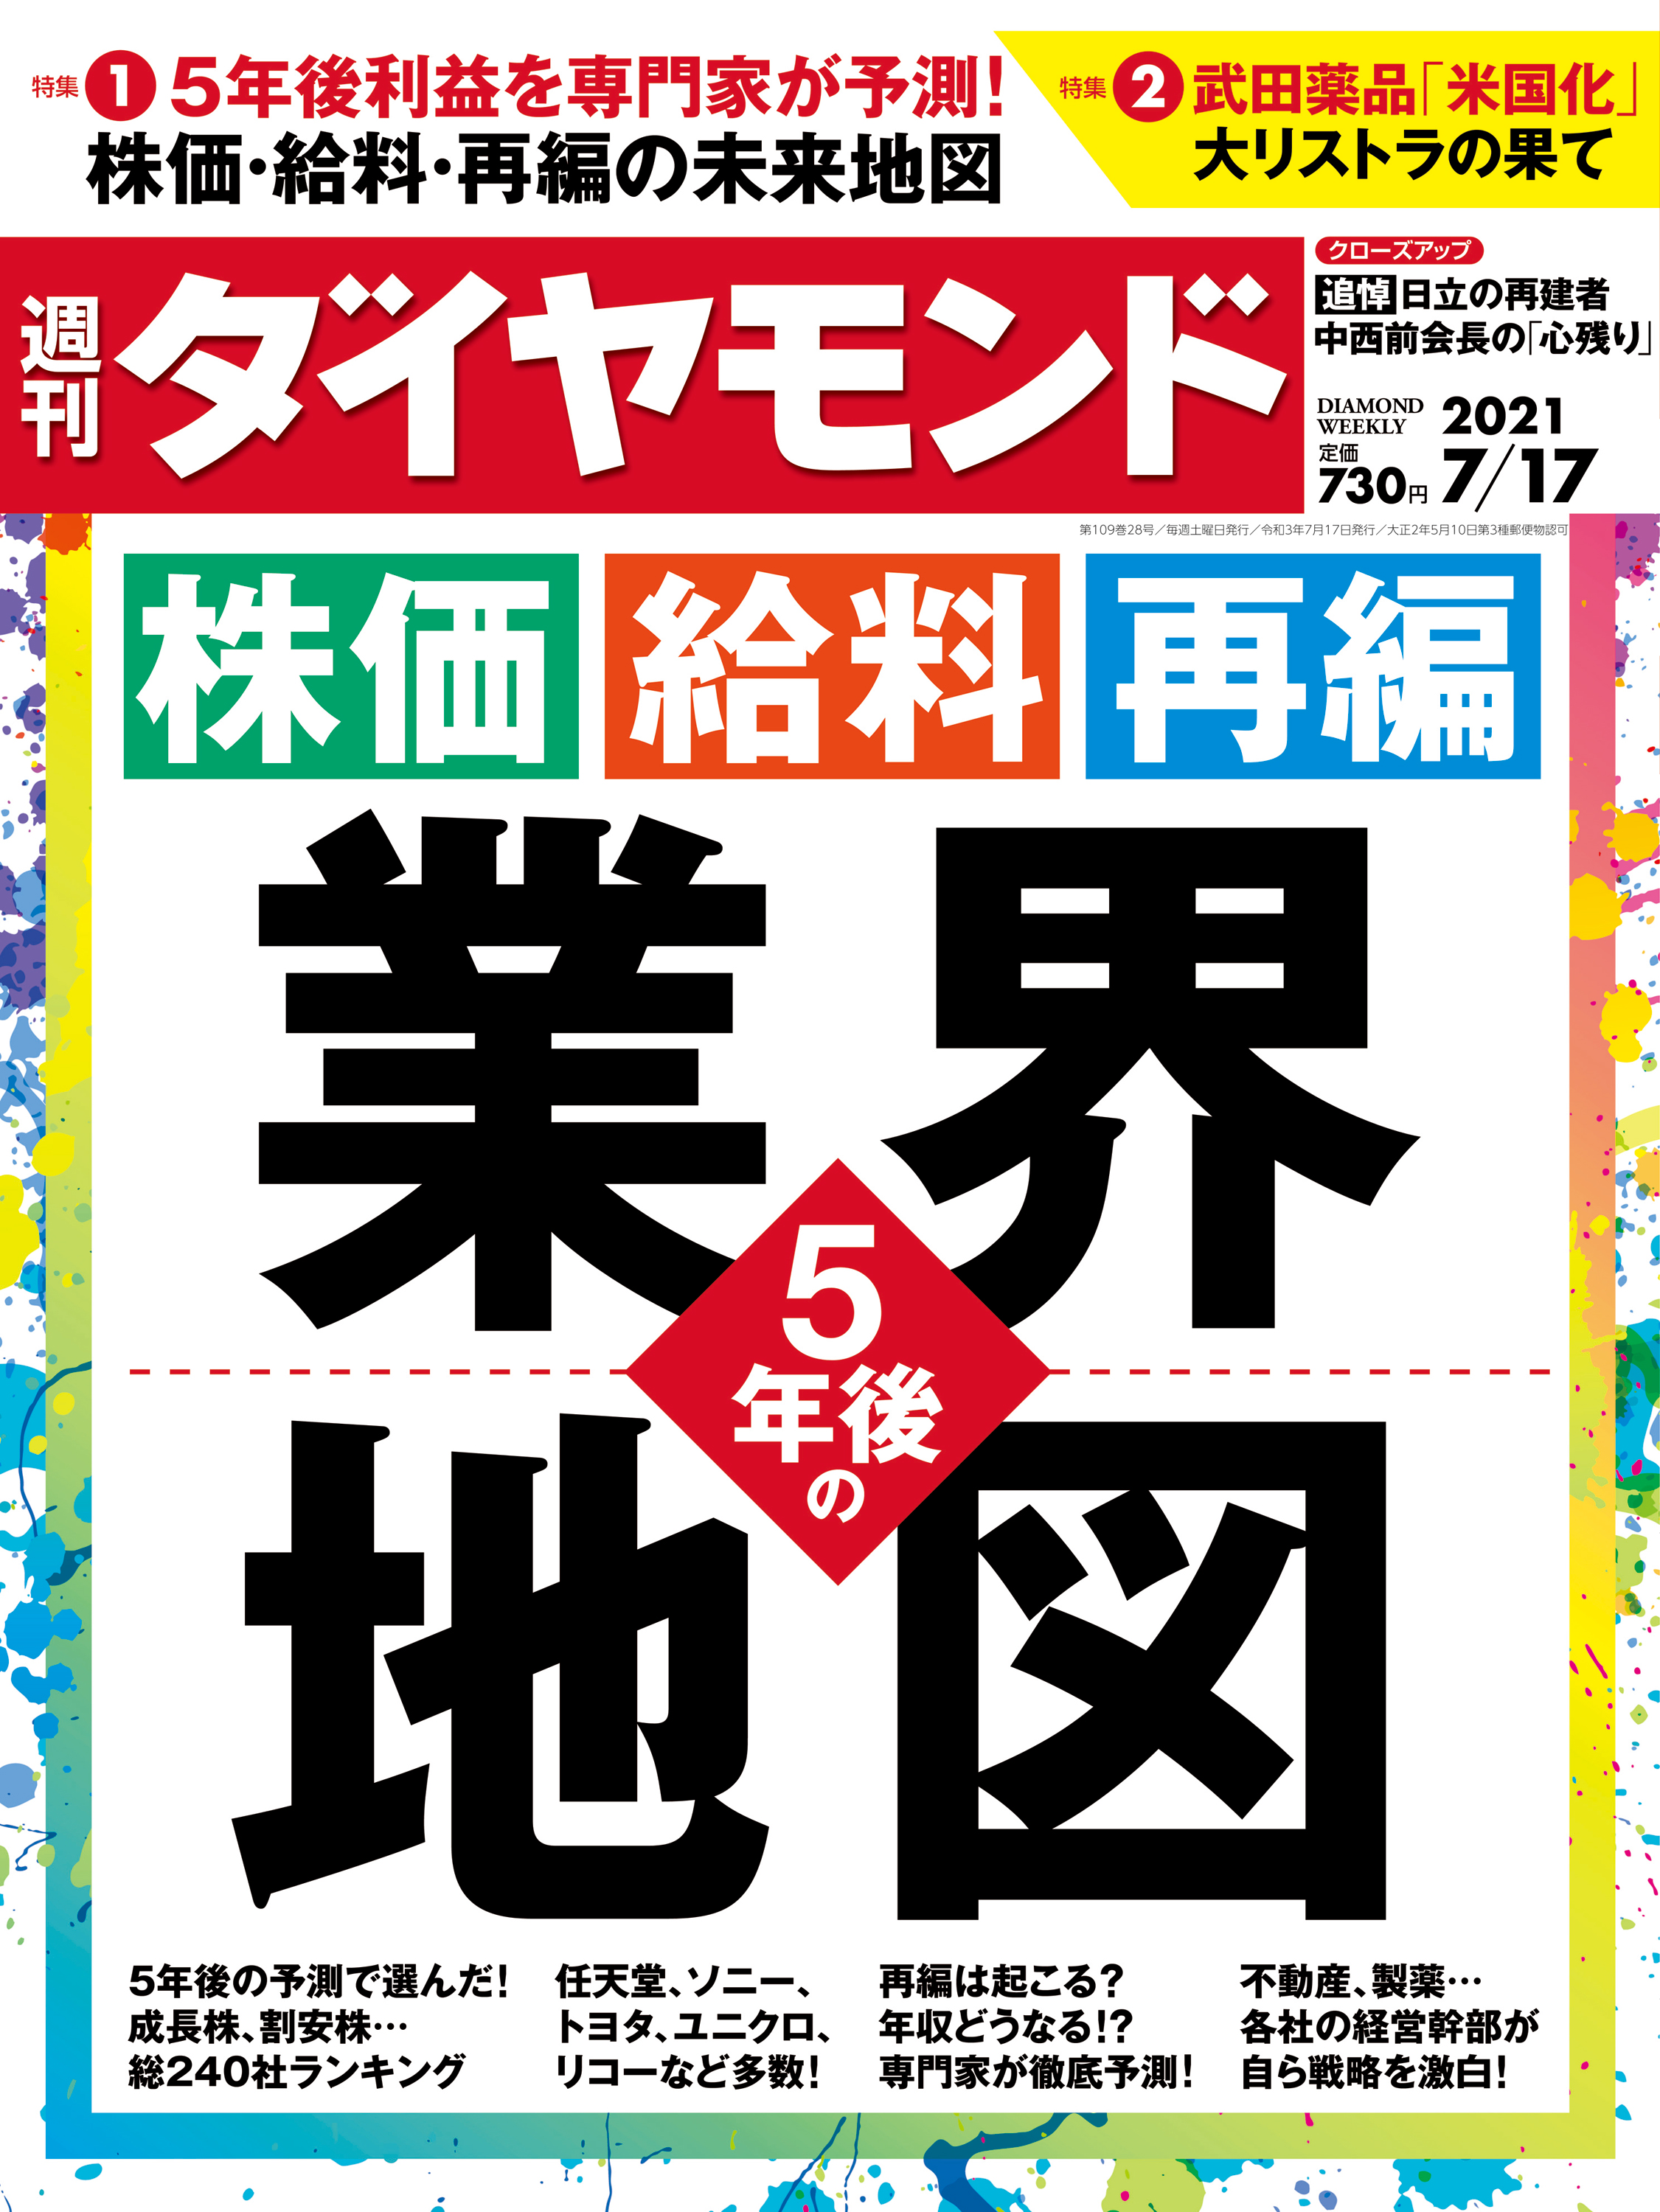 週刊ダイヤモンド 21年7月17日号 - ダイヤモンド社 - 漫画・ラノベ